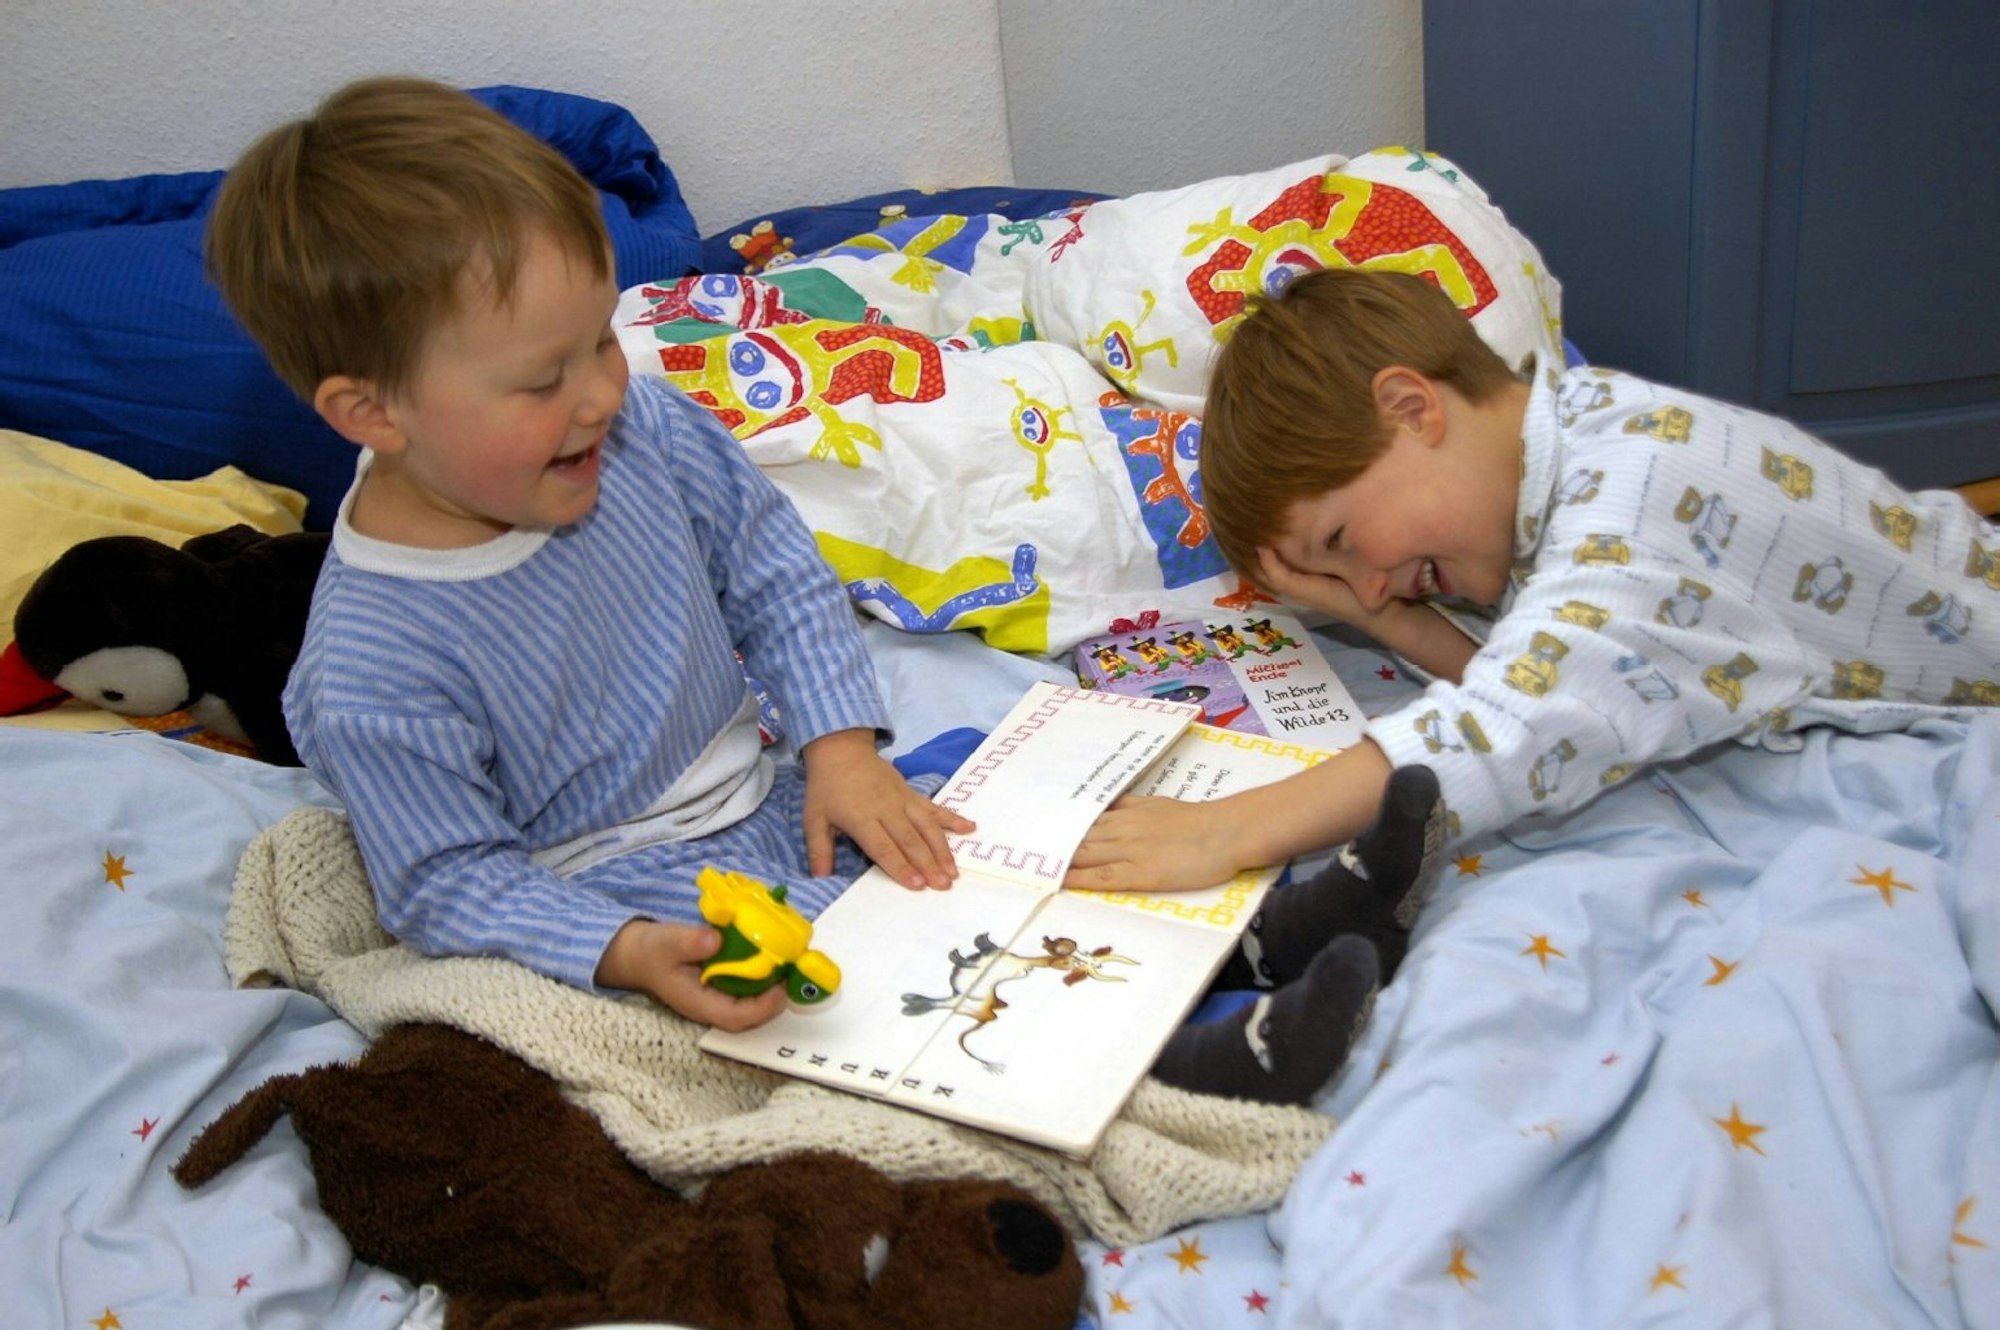 Von wegen jeder seins: Gerade kleine Kinder lieben es, mit ihren Geschwistern in einem Raum zu schlafen.